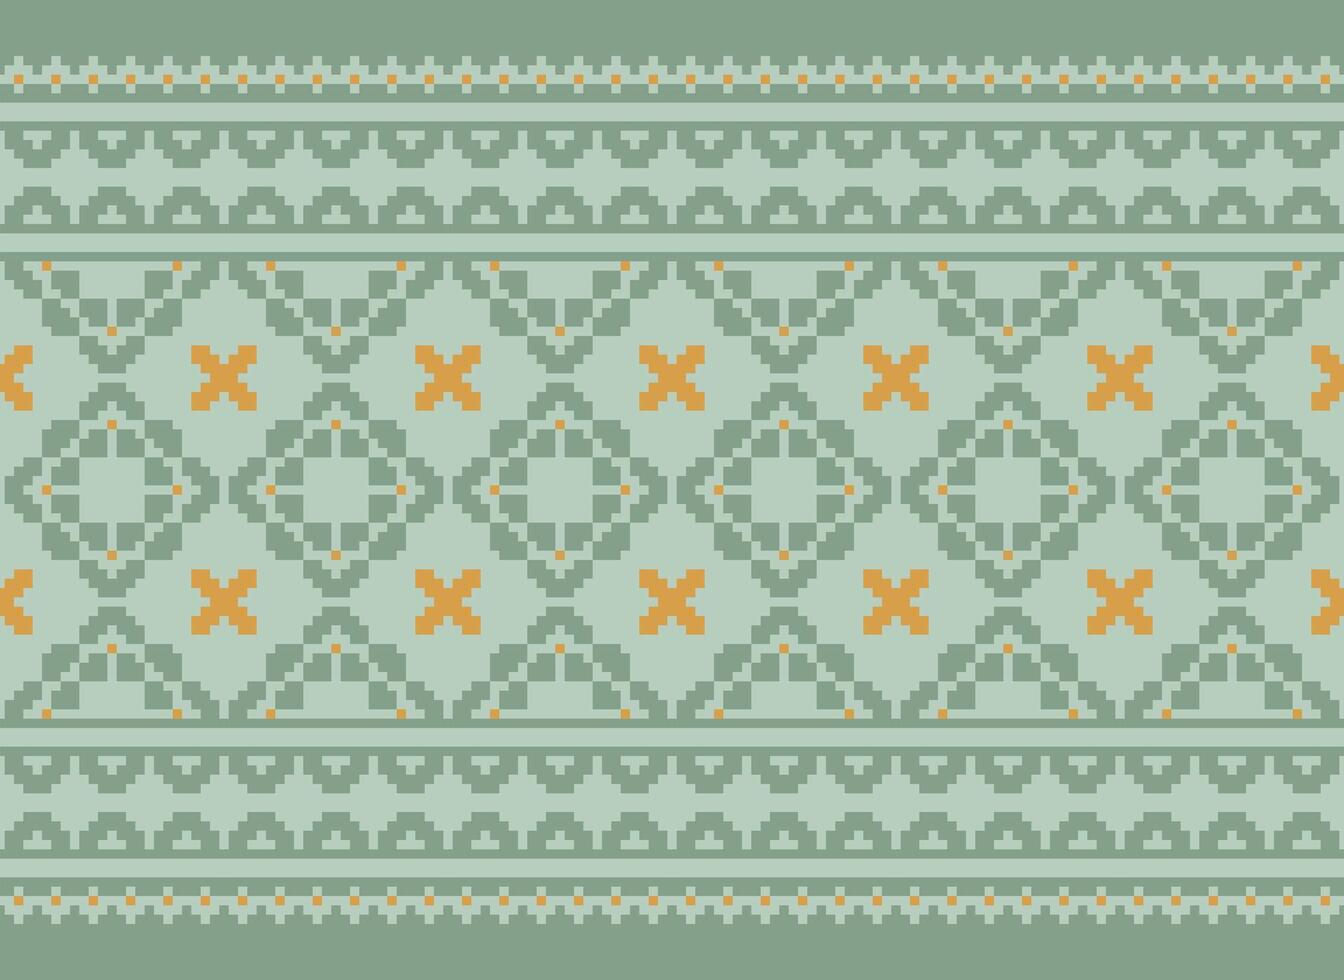 un hermosa geométrico étnico oriental modelo tradicional en blanco fondo.azteca Estilo, bordado, resumen, vector, ilustración.diseño para textura,tela,ropa,envoltorio,decoración,alfombra,impresión. vector